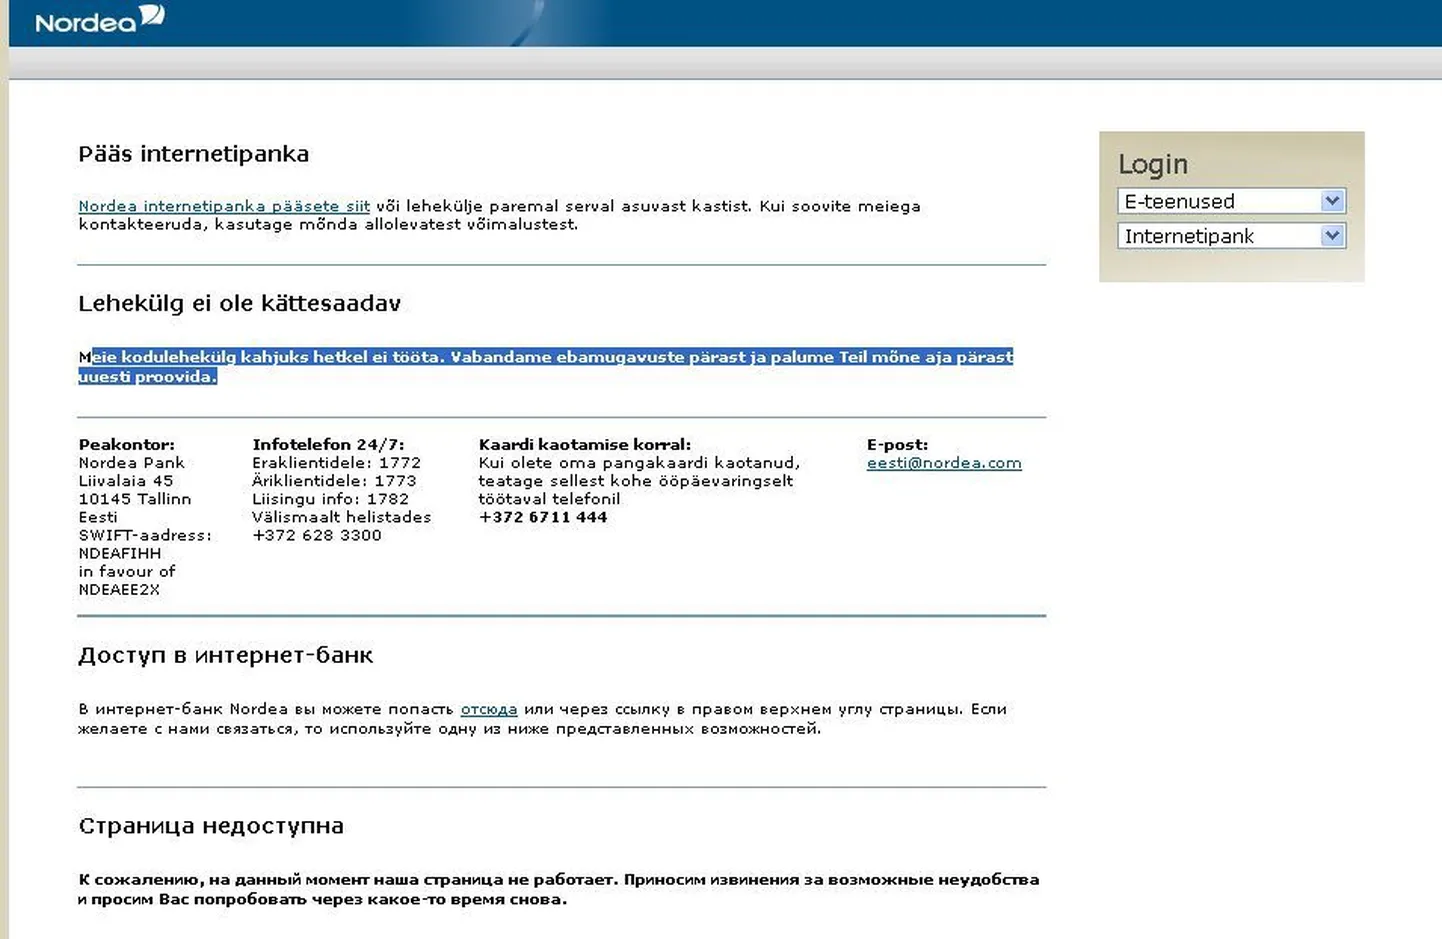 Сайт Nordea не работает